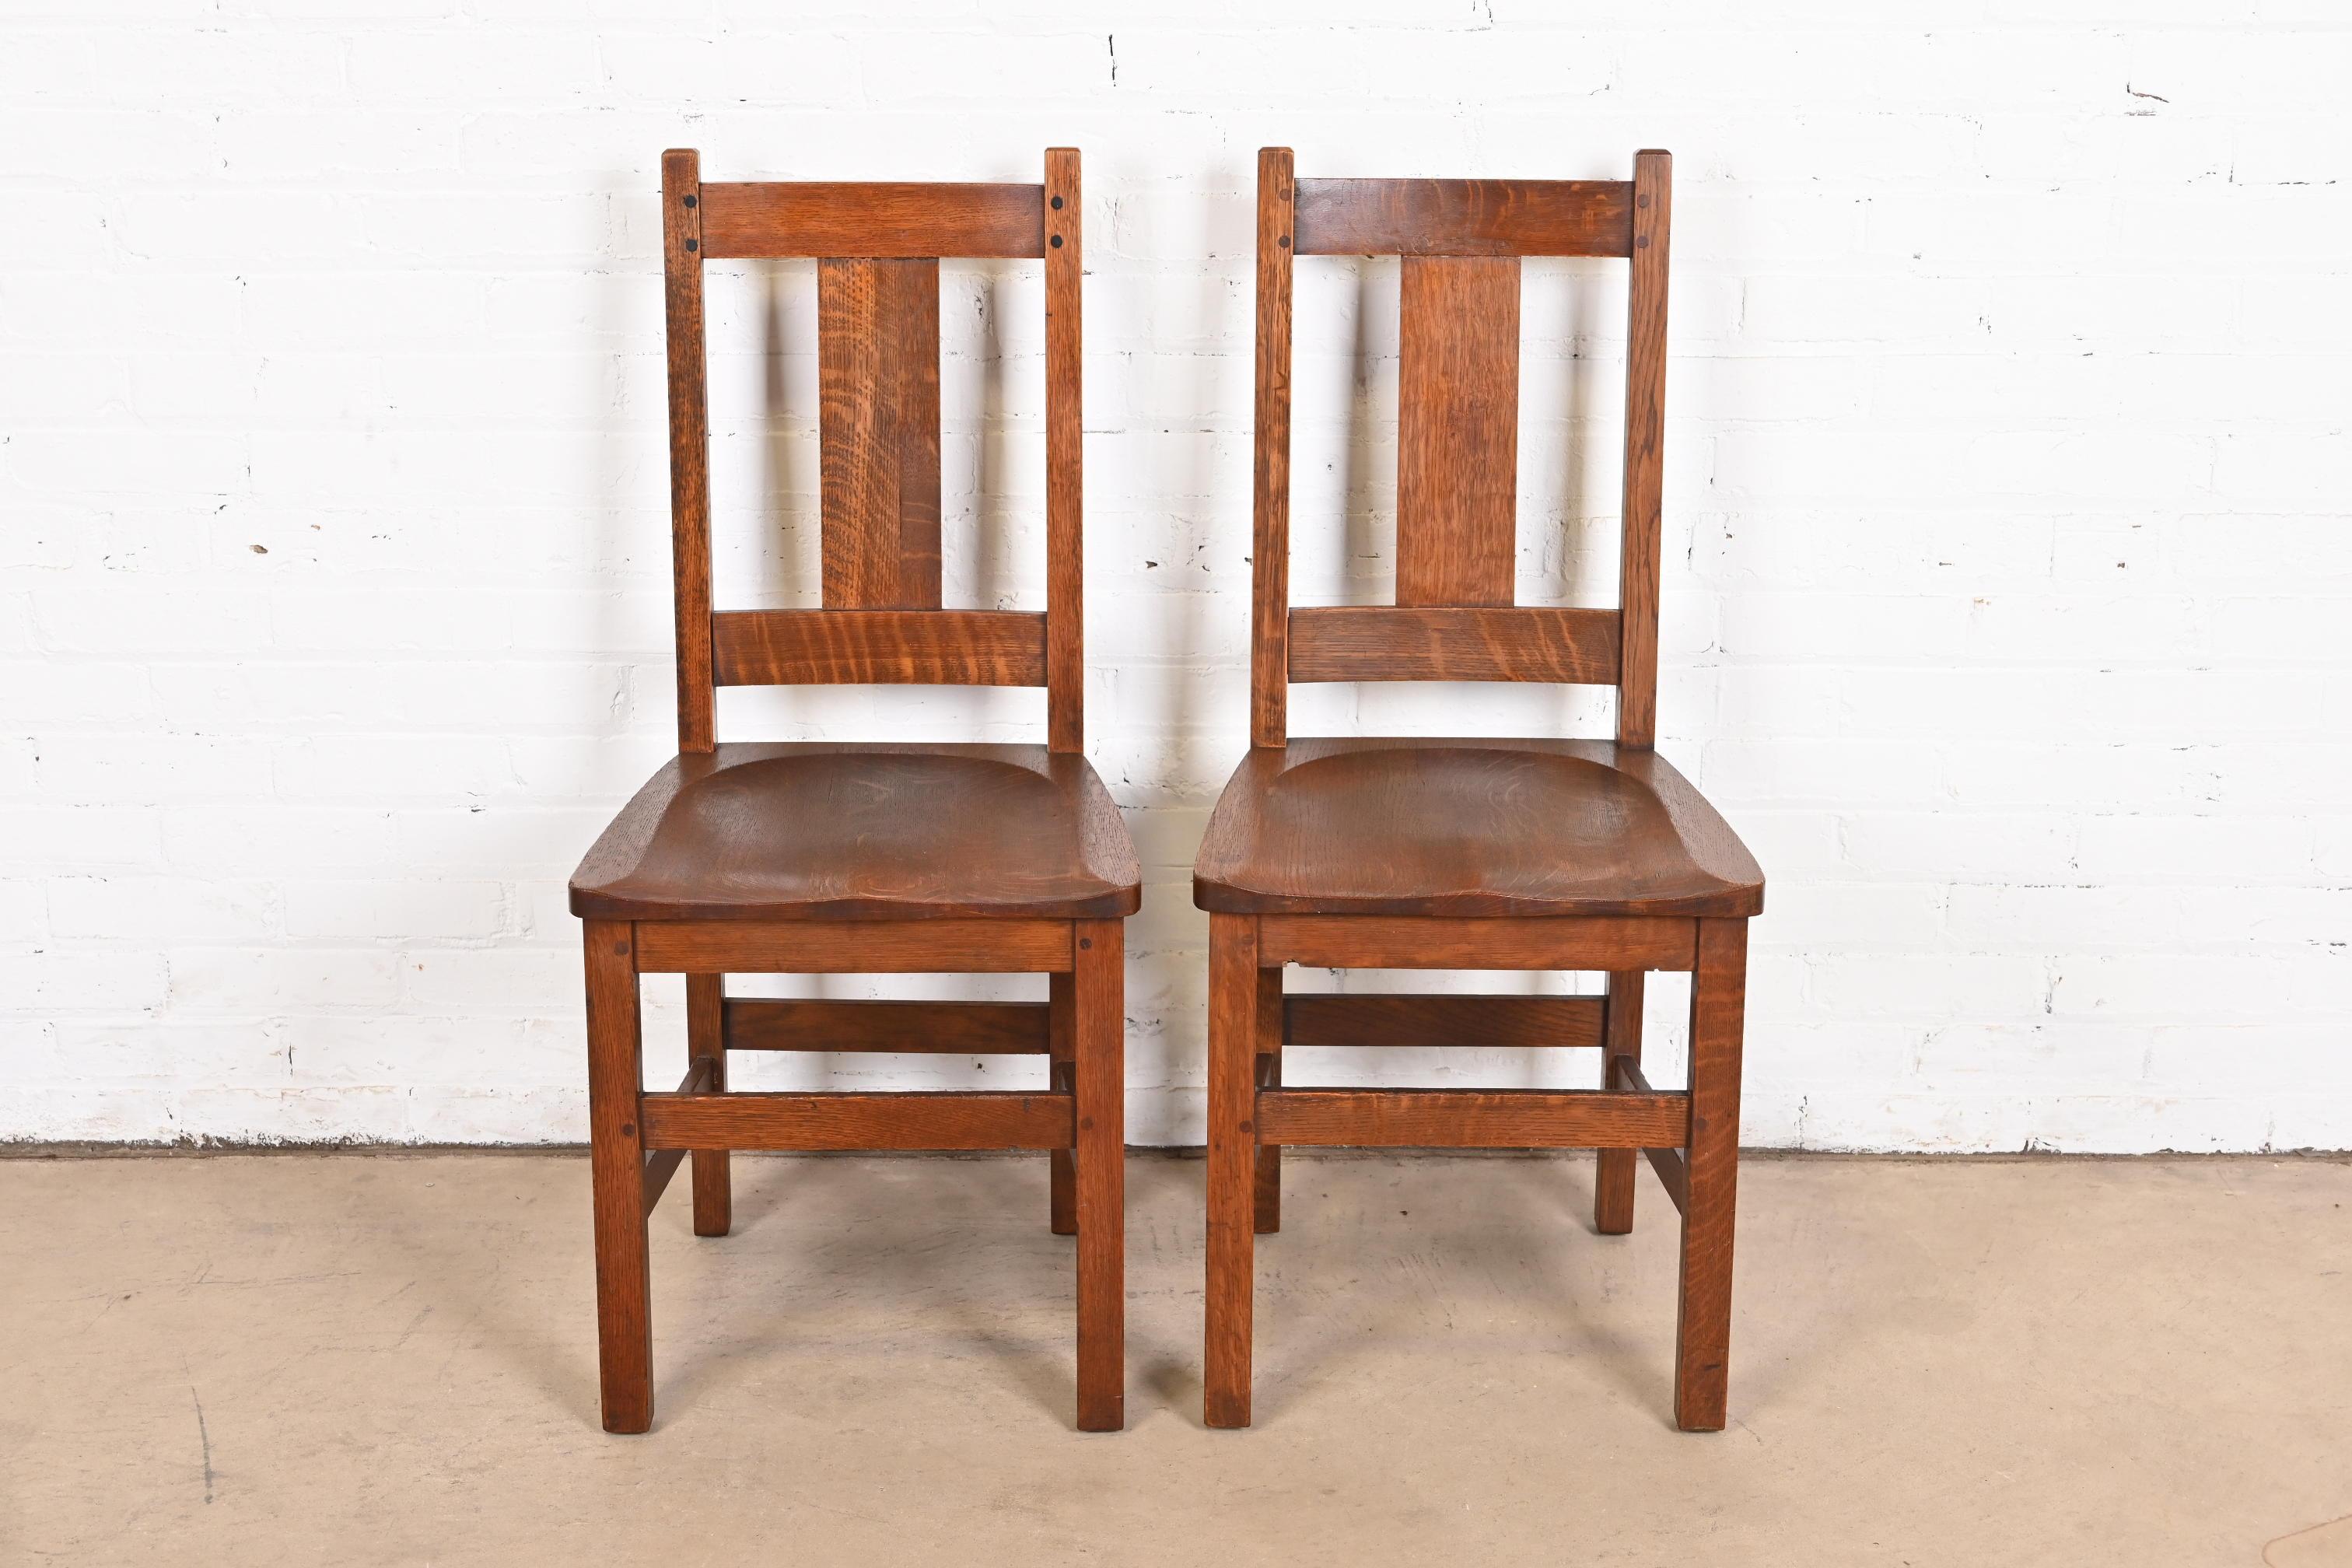 Une belle paire de chaises de salle à manger en chêne massif scié en quartier ou Arts & Crafts.

Par Limbert

USA, Circa 1900

Dimensions : 17,25 